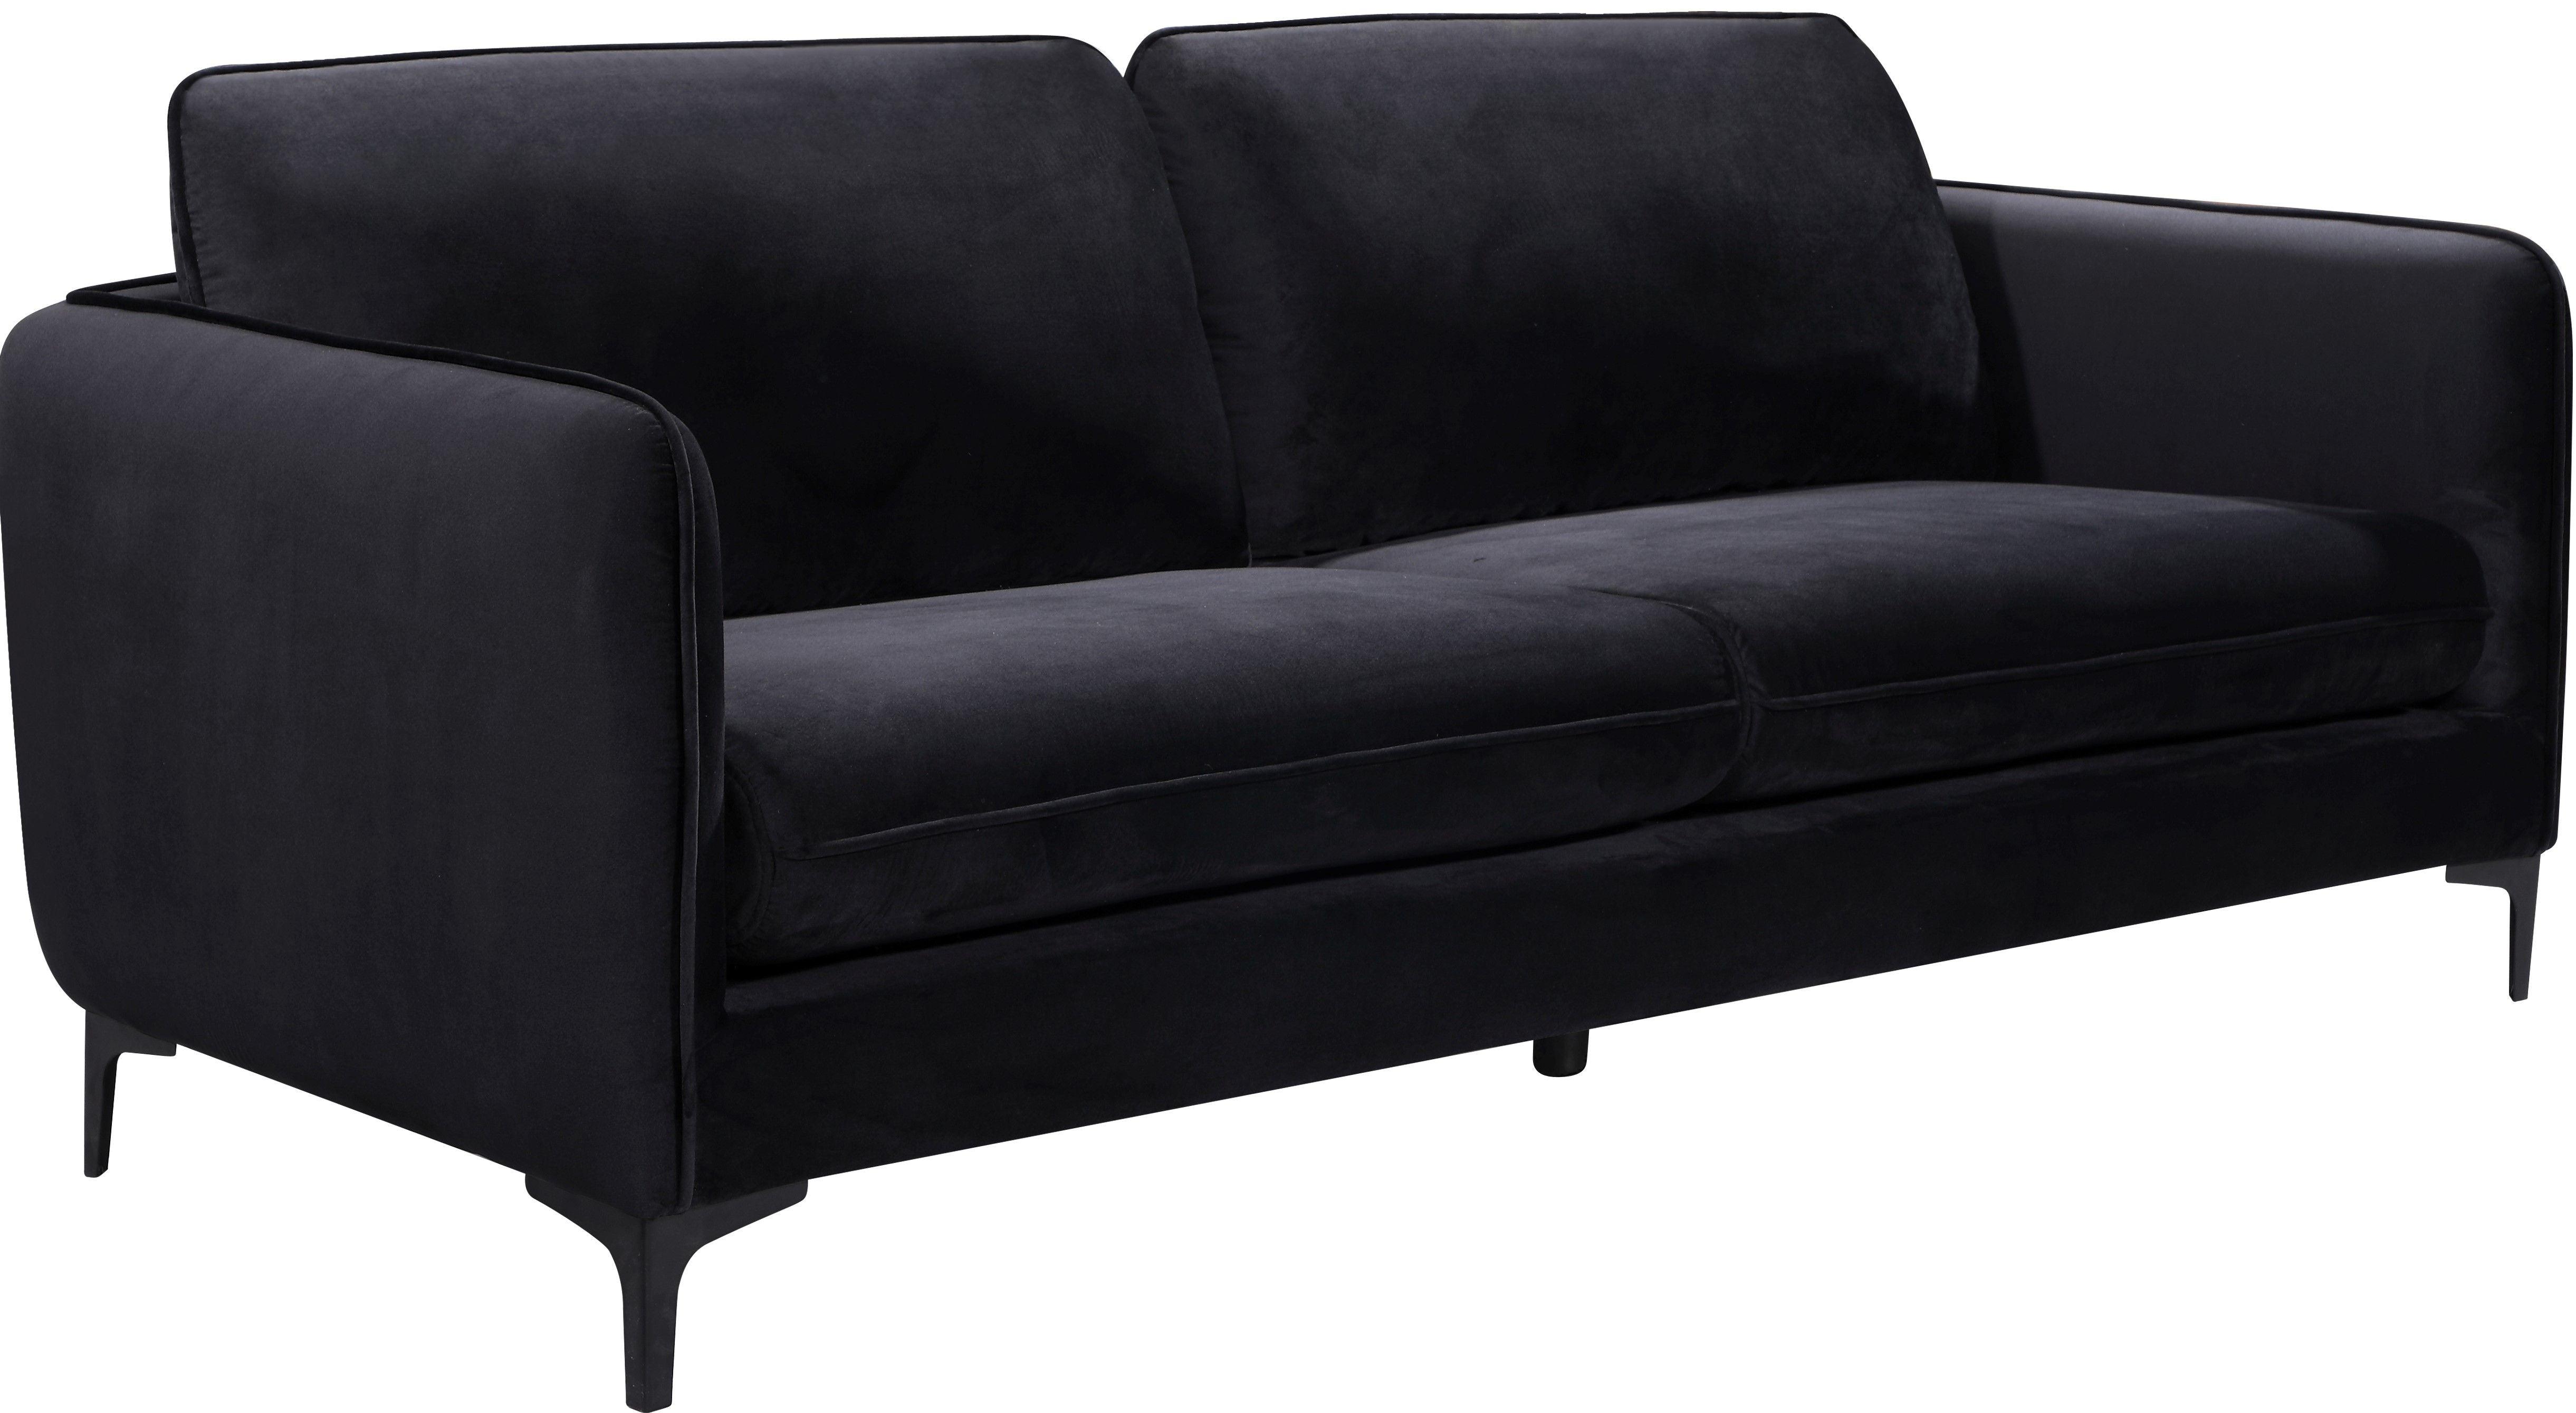 Meridian Furniture - Poppy - Sofa - Black - 5th Avenue Furniture